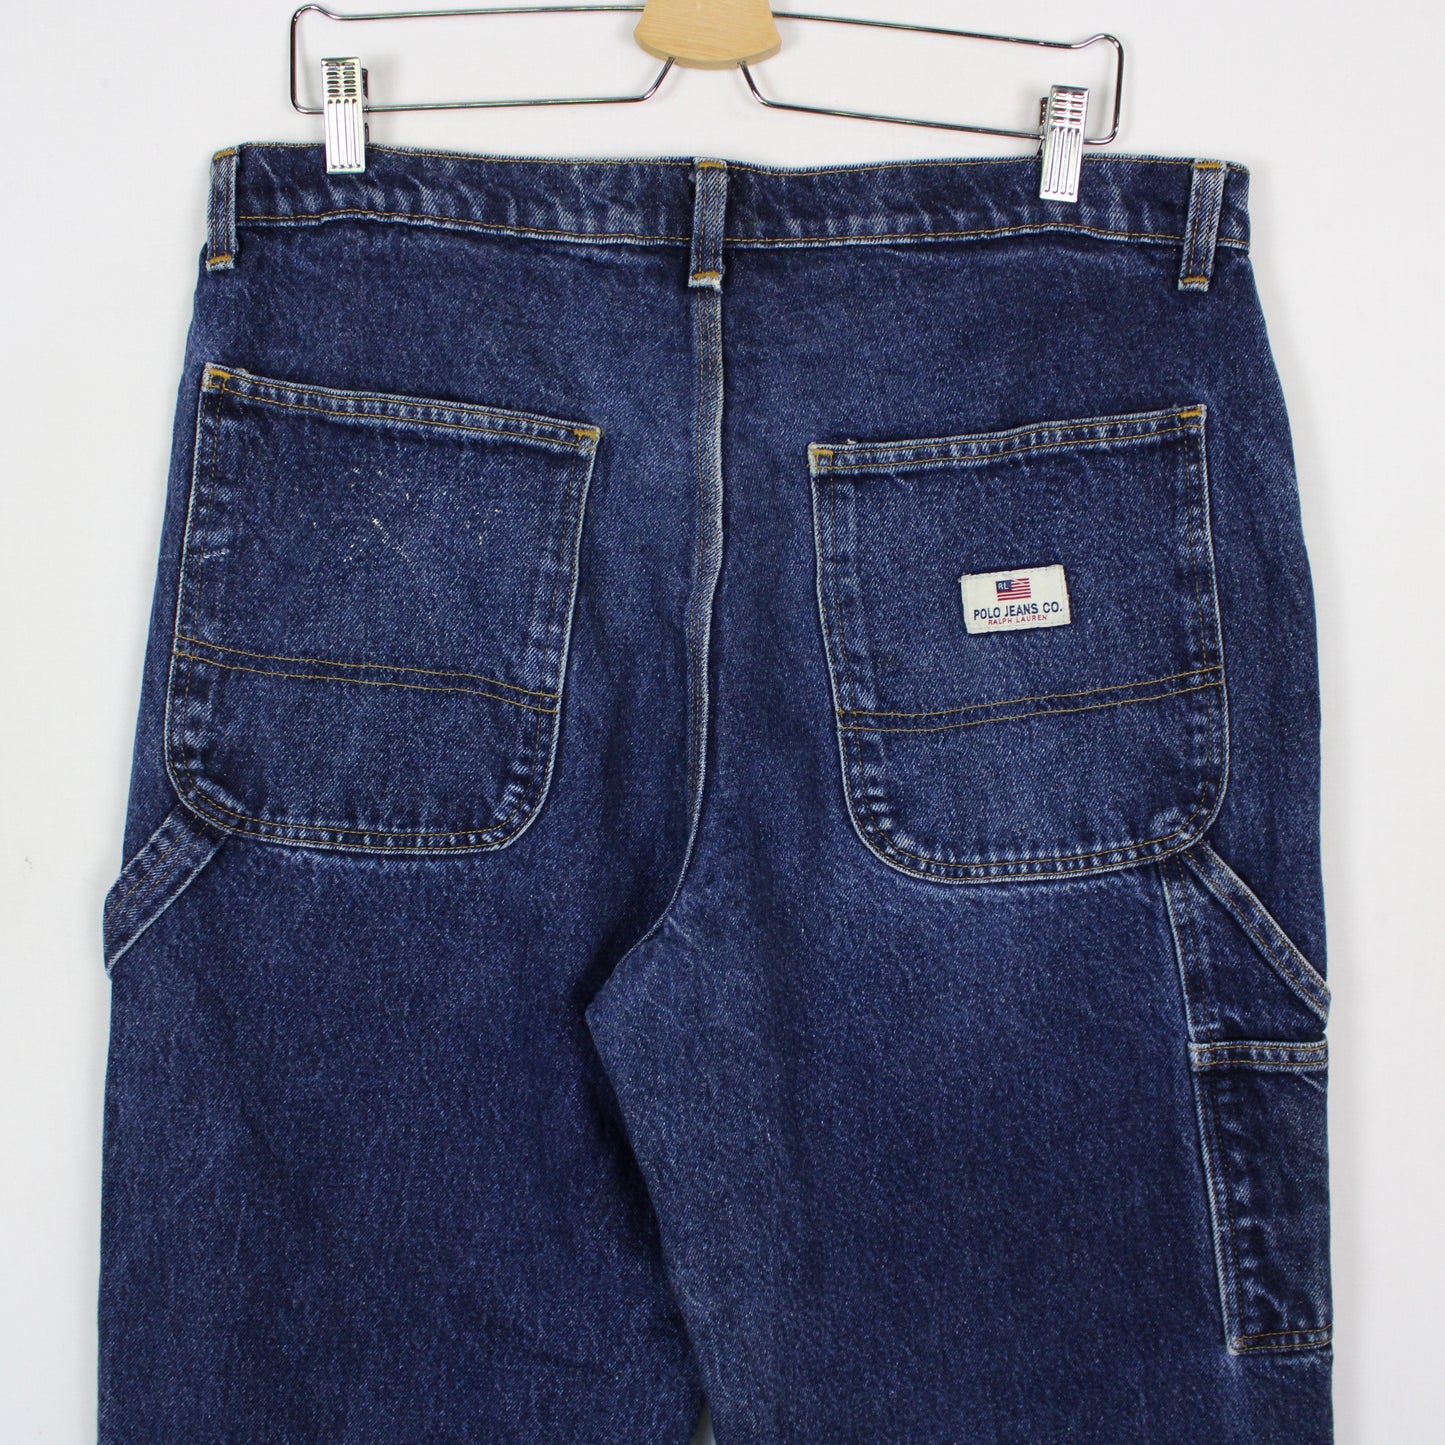 Vintage Polo Jeans Co Carpenter Pants - 33x34'